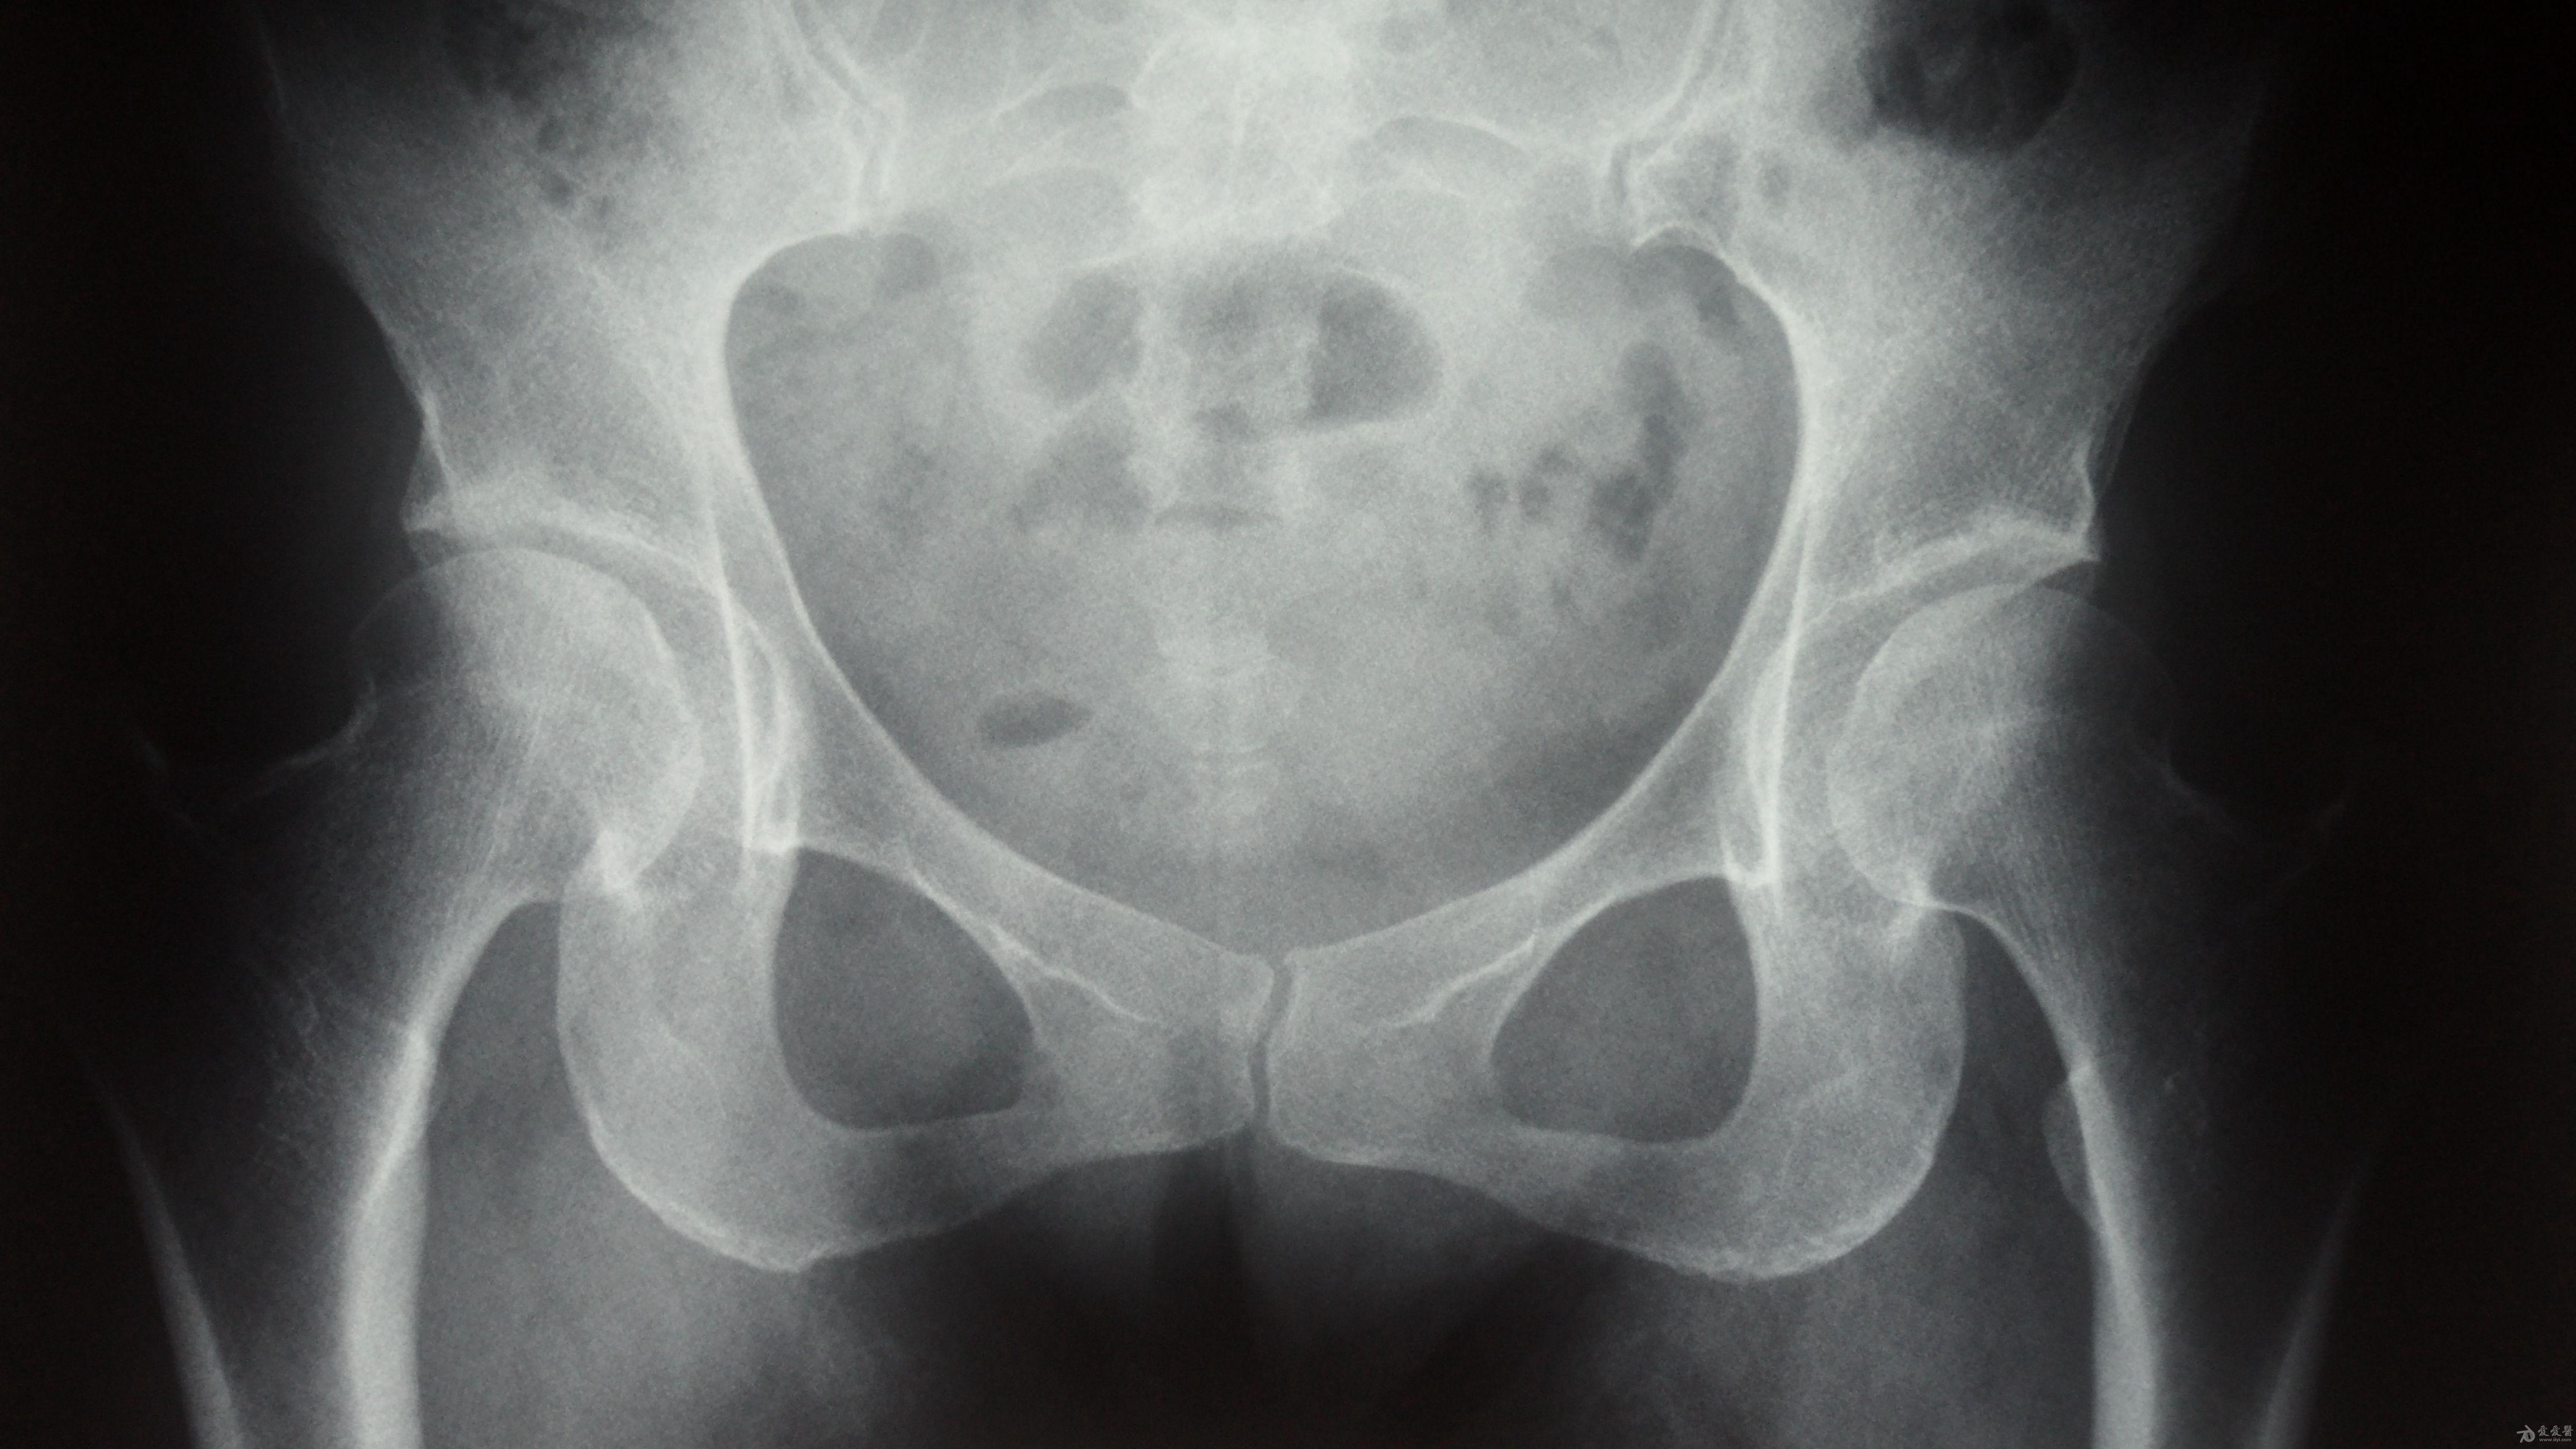 后腹股沟,臀部,及大腿外侧疼痛加剧,于去年10月份核磁示双侧髋关节